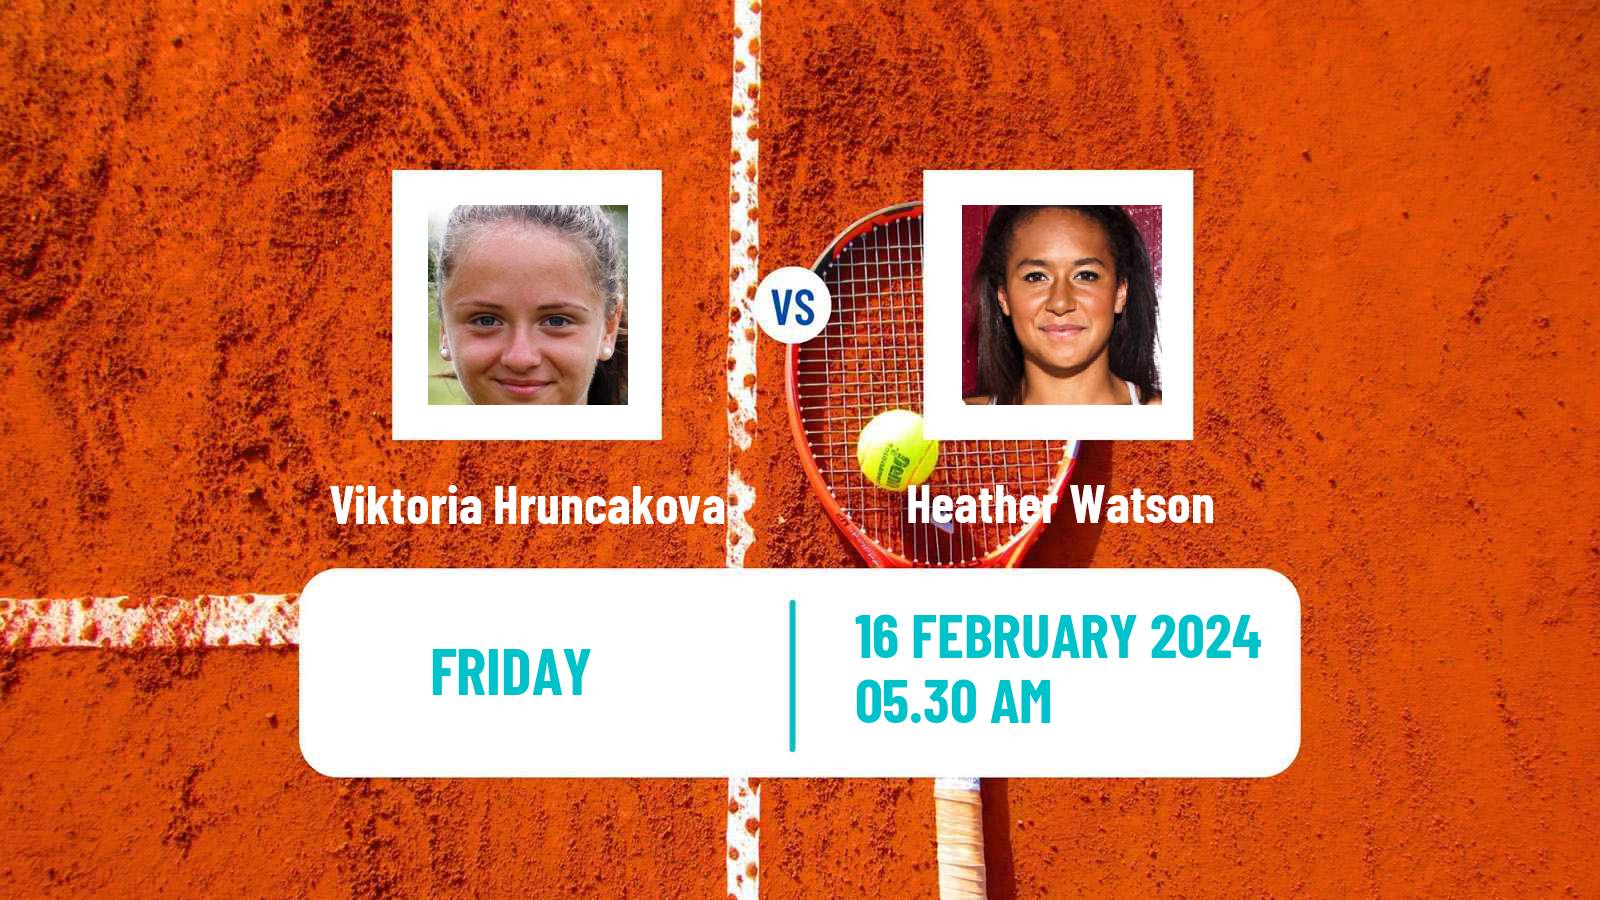 Tennis ITF W50 Roehampton Women Viktoria Hruncakova - Heather Watson